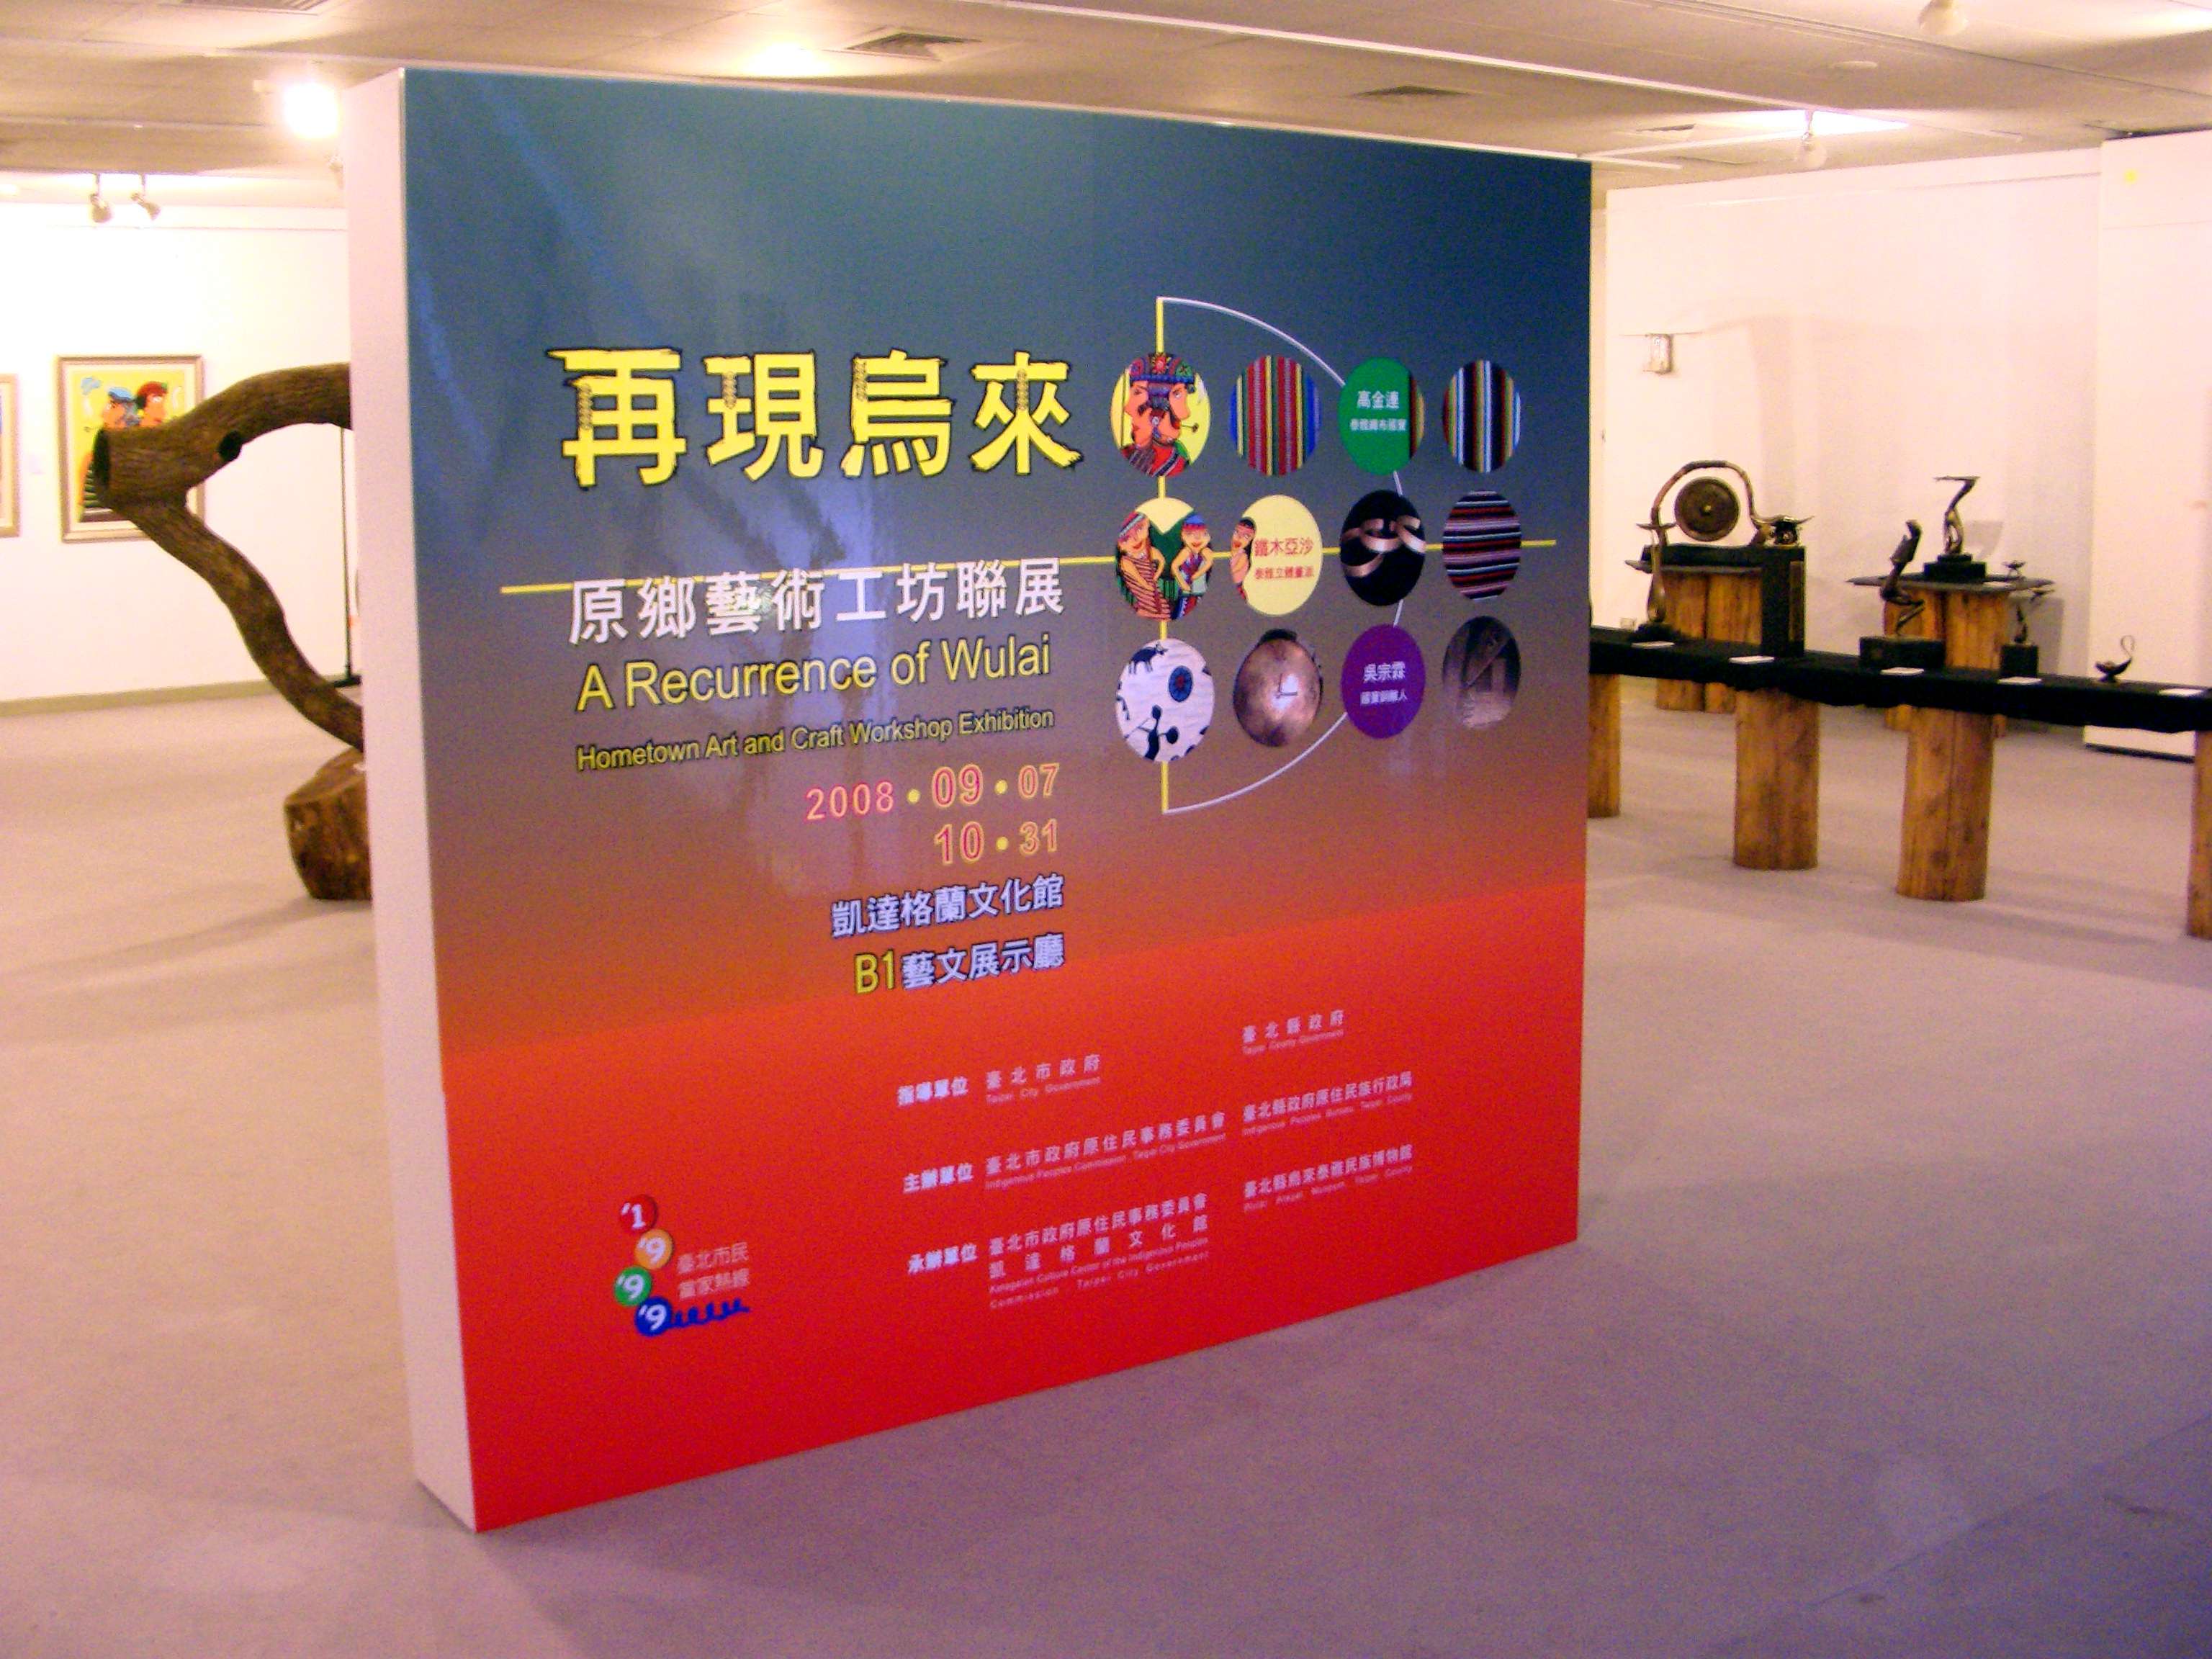 Ketagalan - Reproduce Wulai Exhibition activate,6 photos